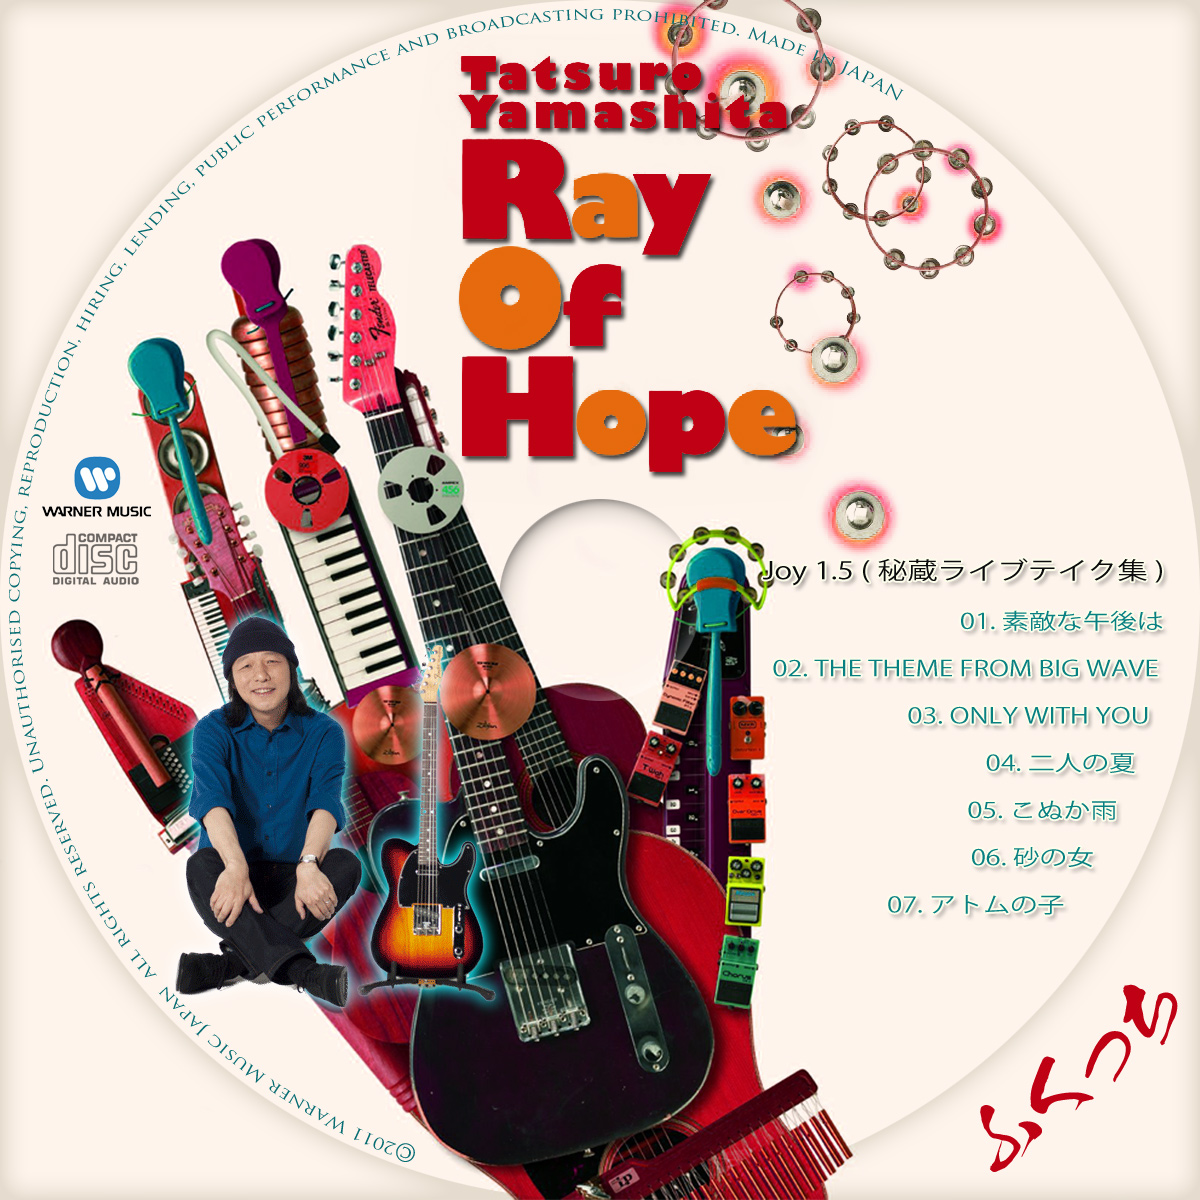 山下達郎 - Ray Of Hope | ふくっちの音楽CD/DVDカスタムレーベル